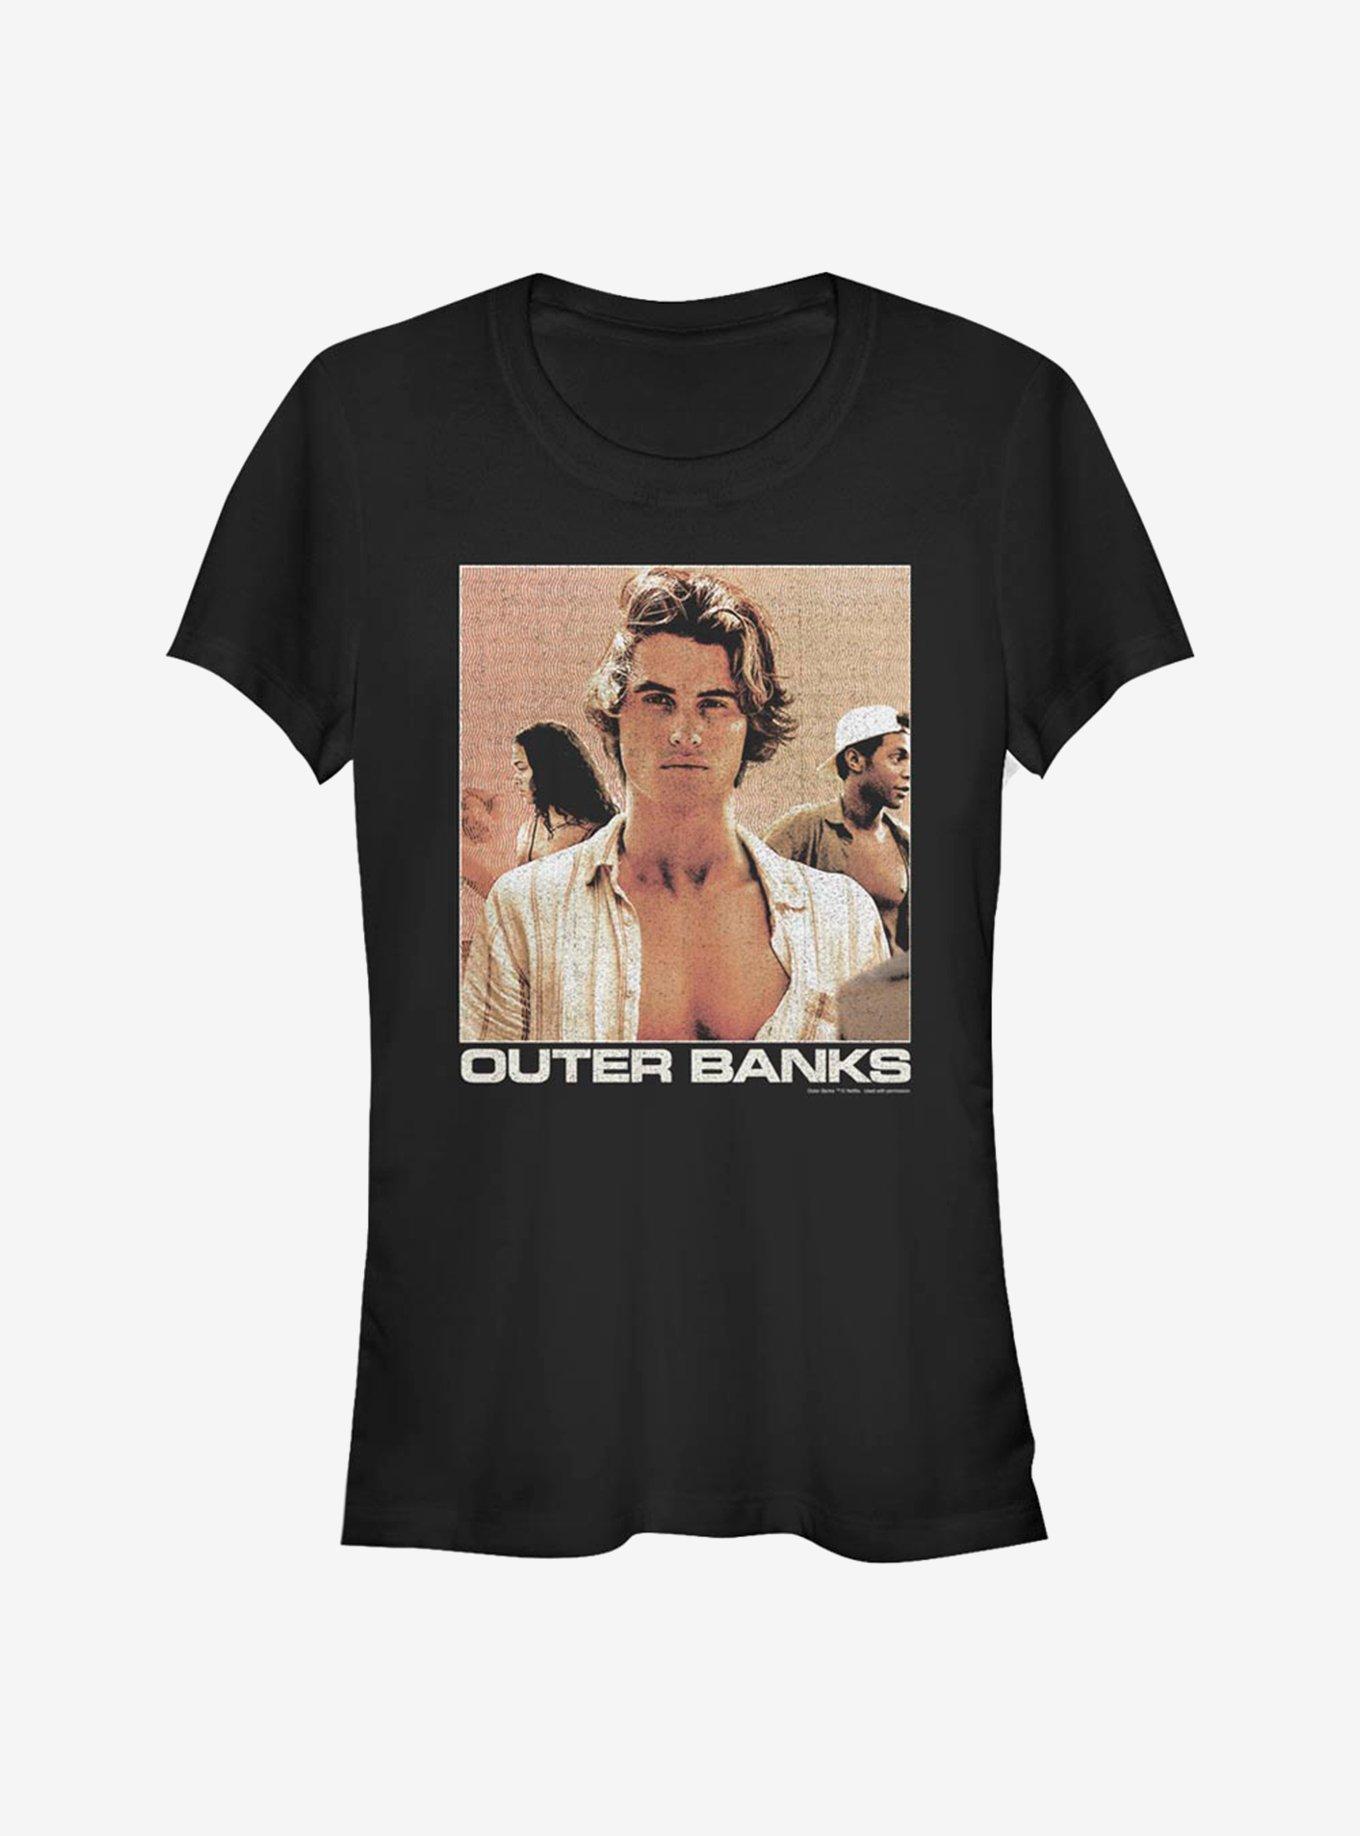 Outer Banks Waves Poster Girls T-Shirt, BLACK, hi-res